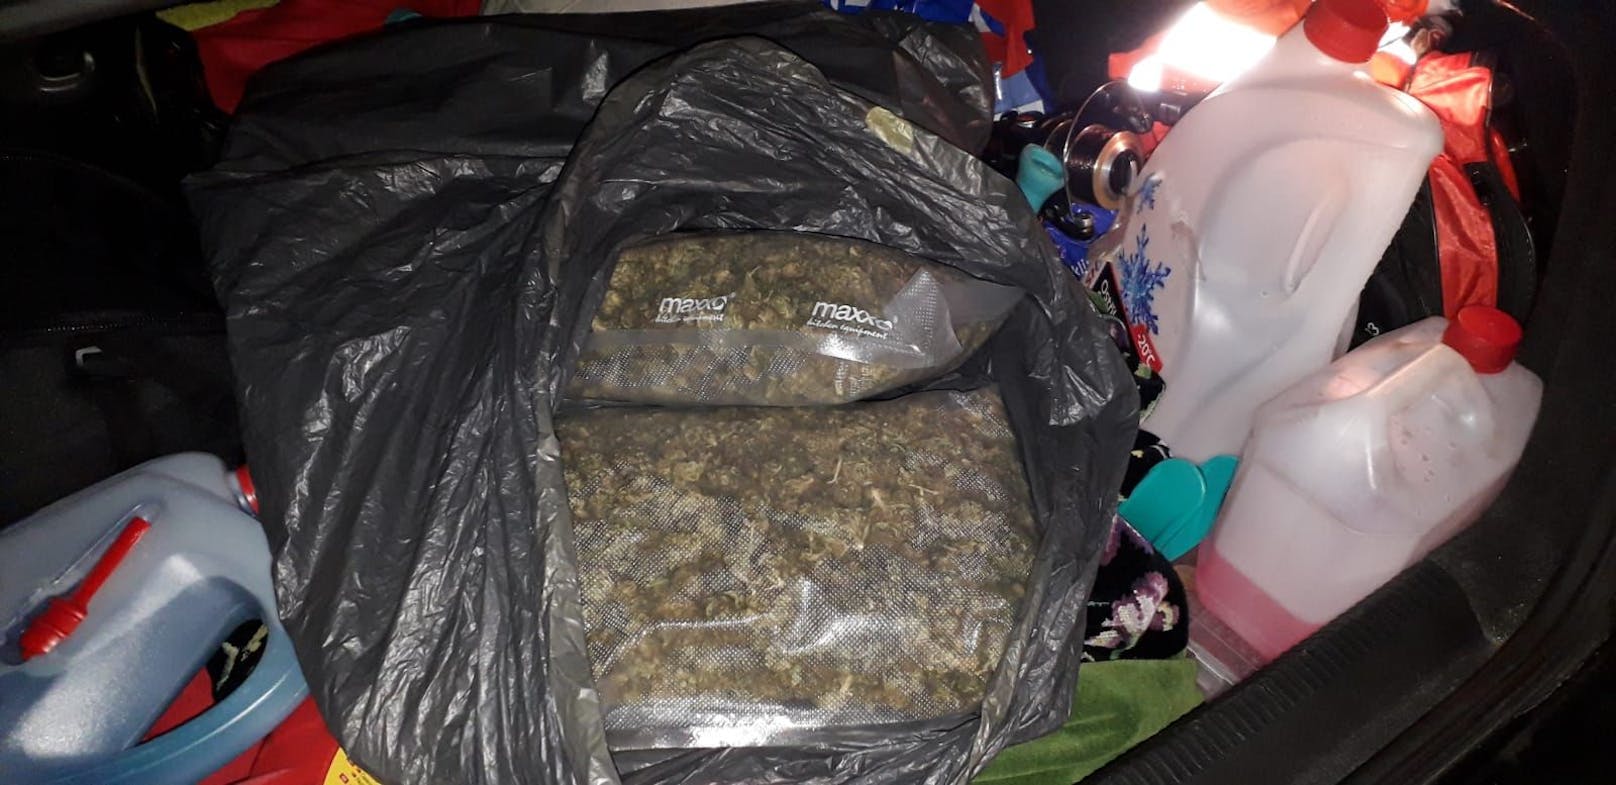 Die Polizei Salzburg hat in einem Reisekoffer insgesamt rund 8 Kilogramm Cannabiskraut sichergestellt.